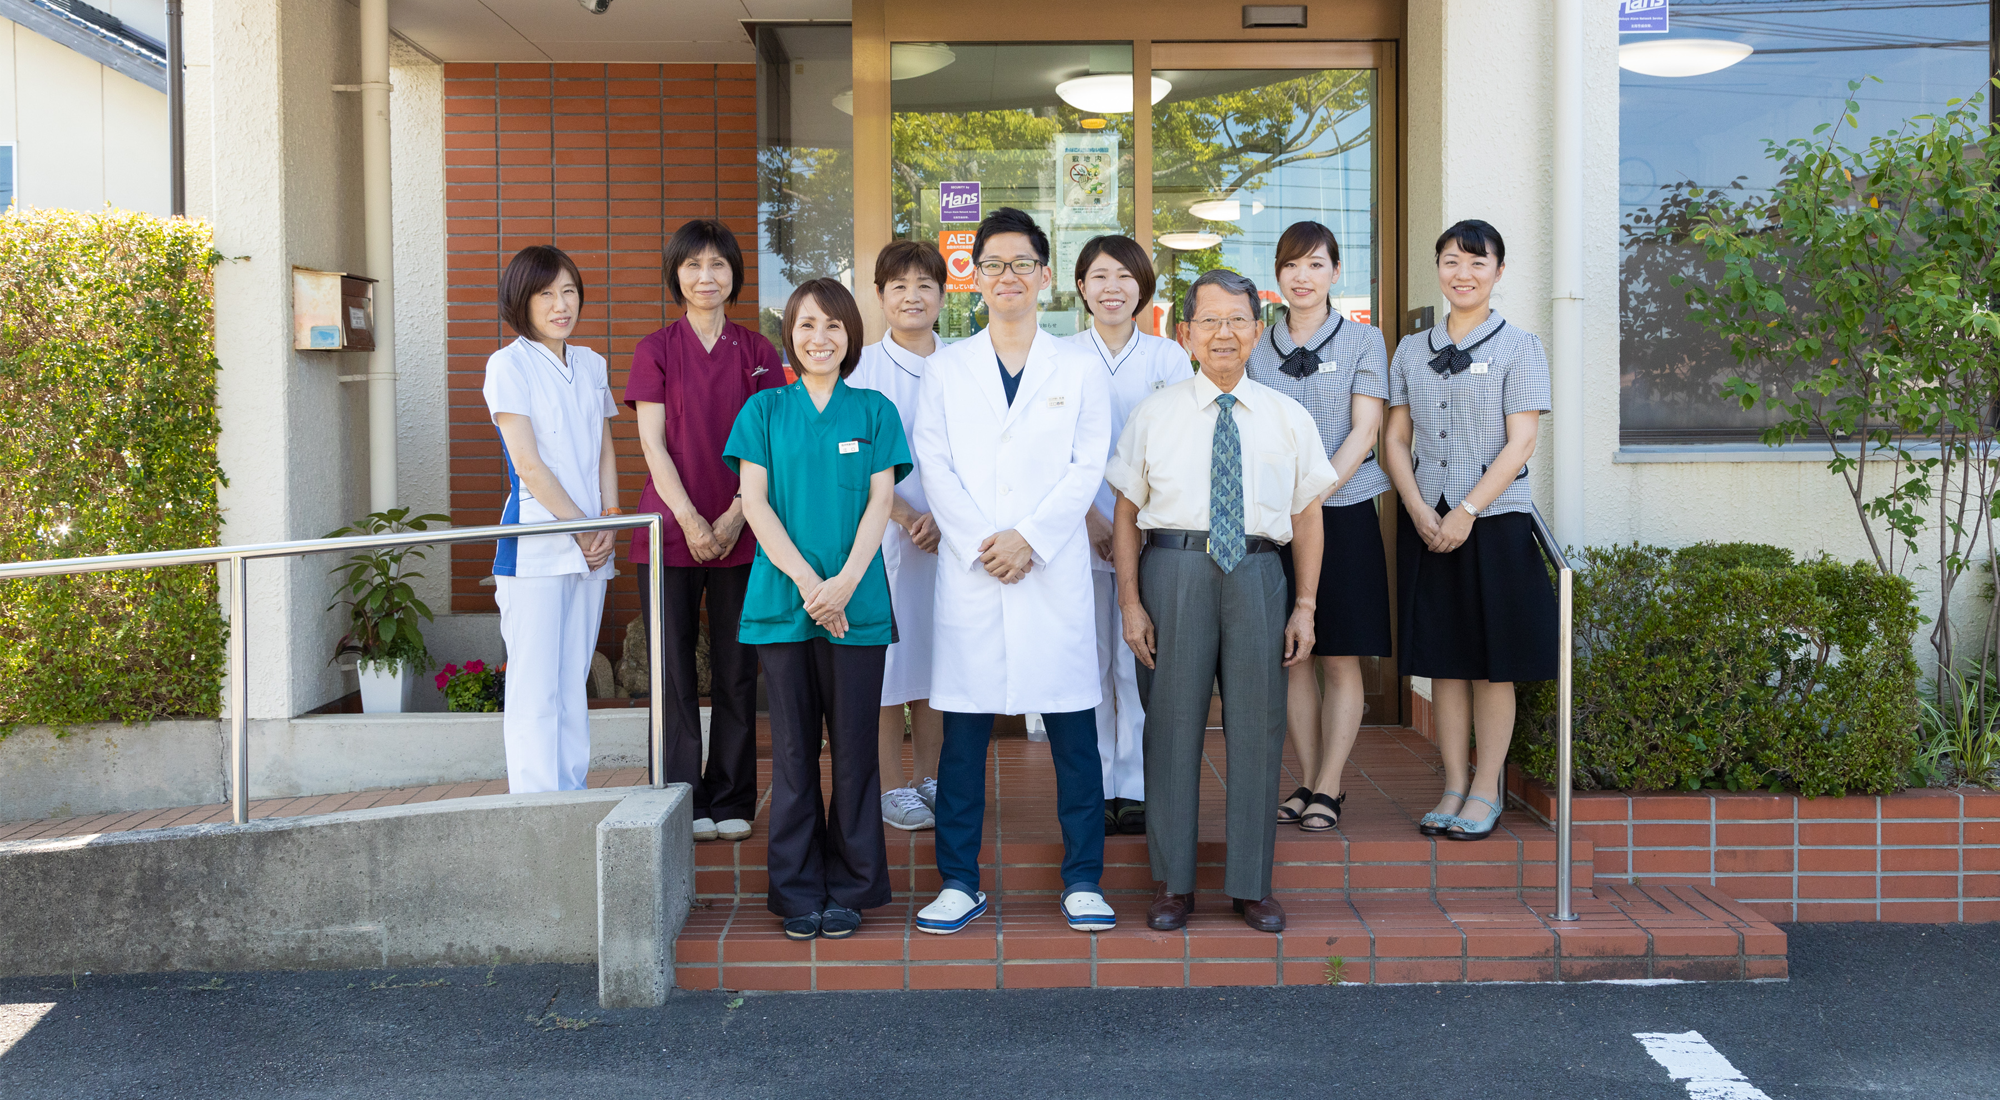 江口内科医院の集合写真です。患者さまを笑顔でお迎えいたします。